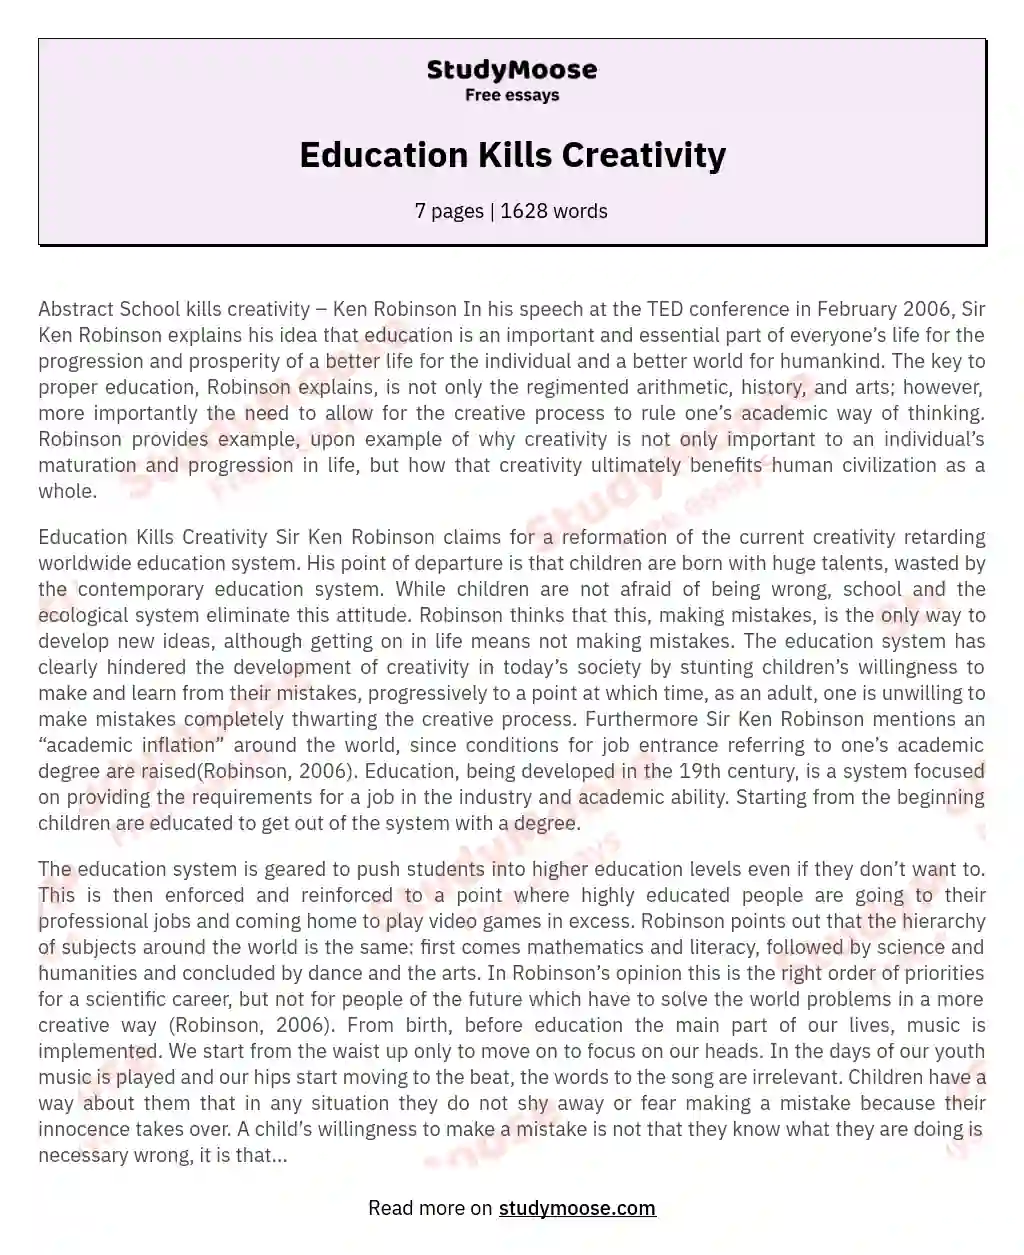 Education Kills Creativity essay